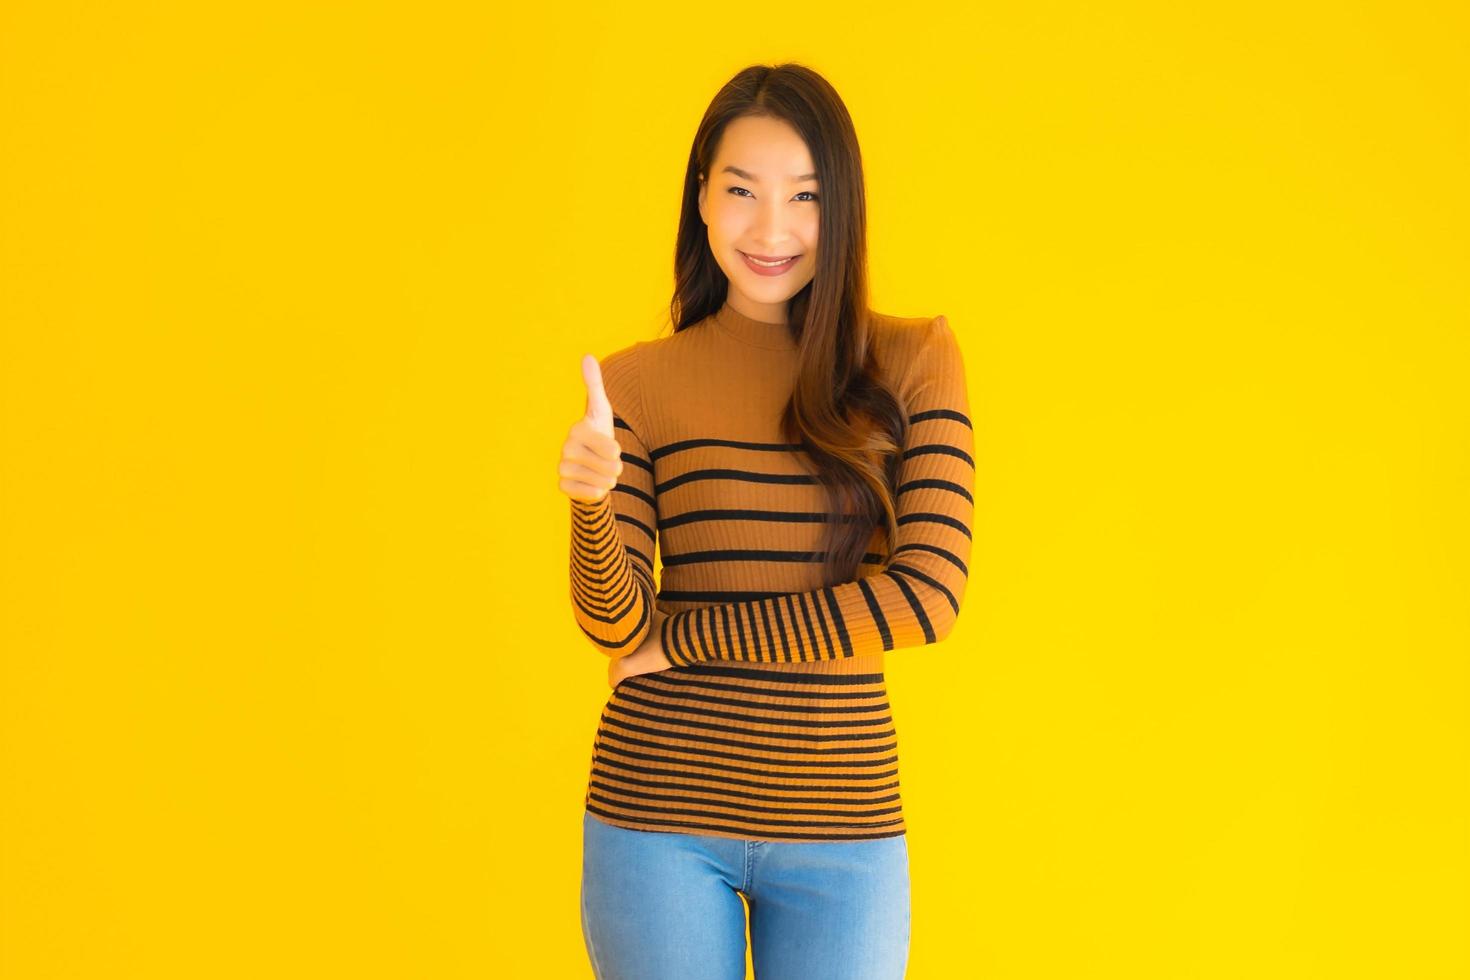 Aziatische vrouw geeft duimen op voor gele achtergrond foto